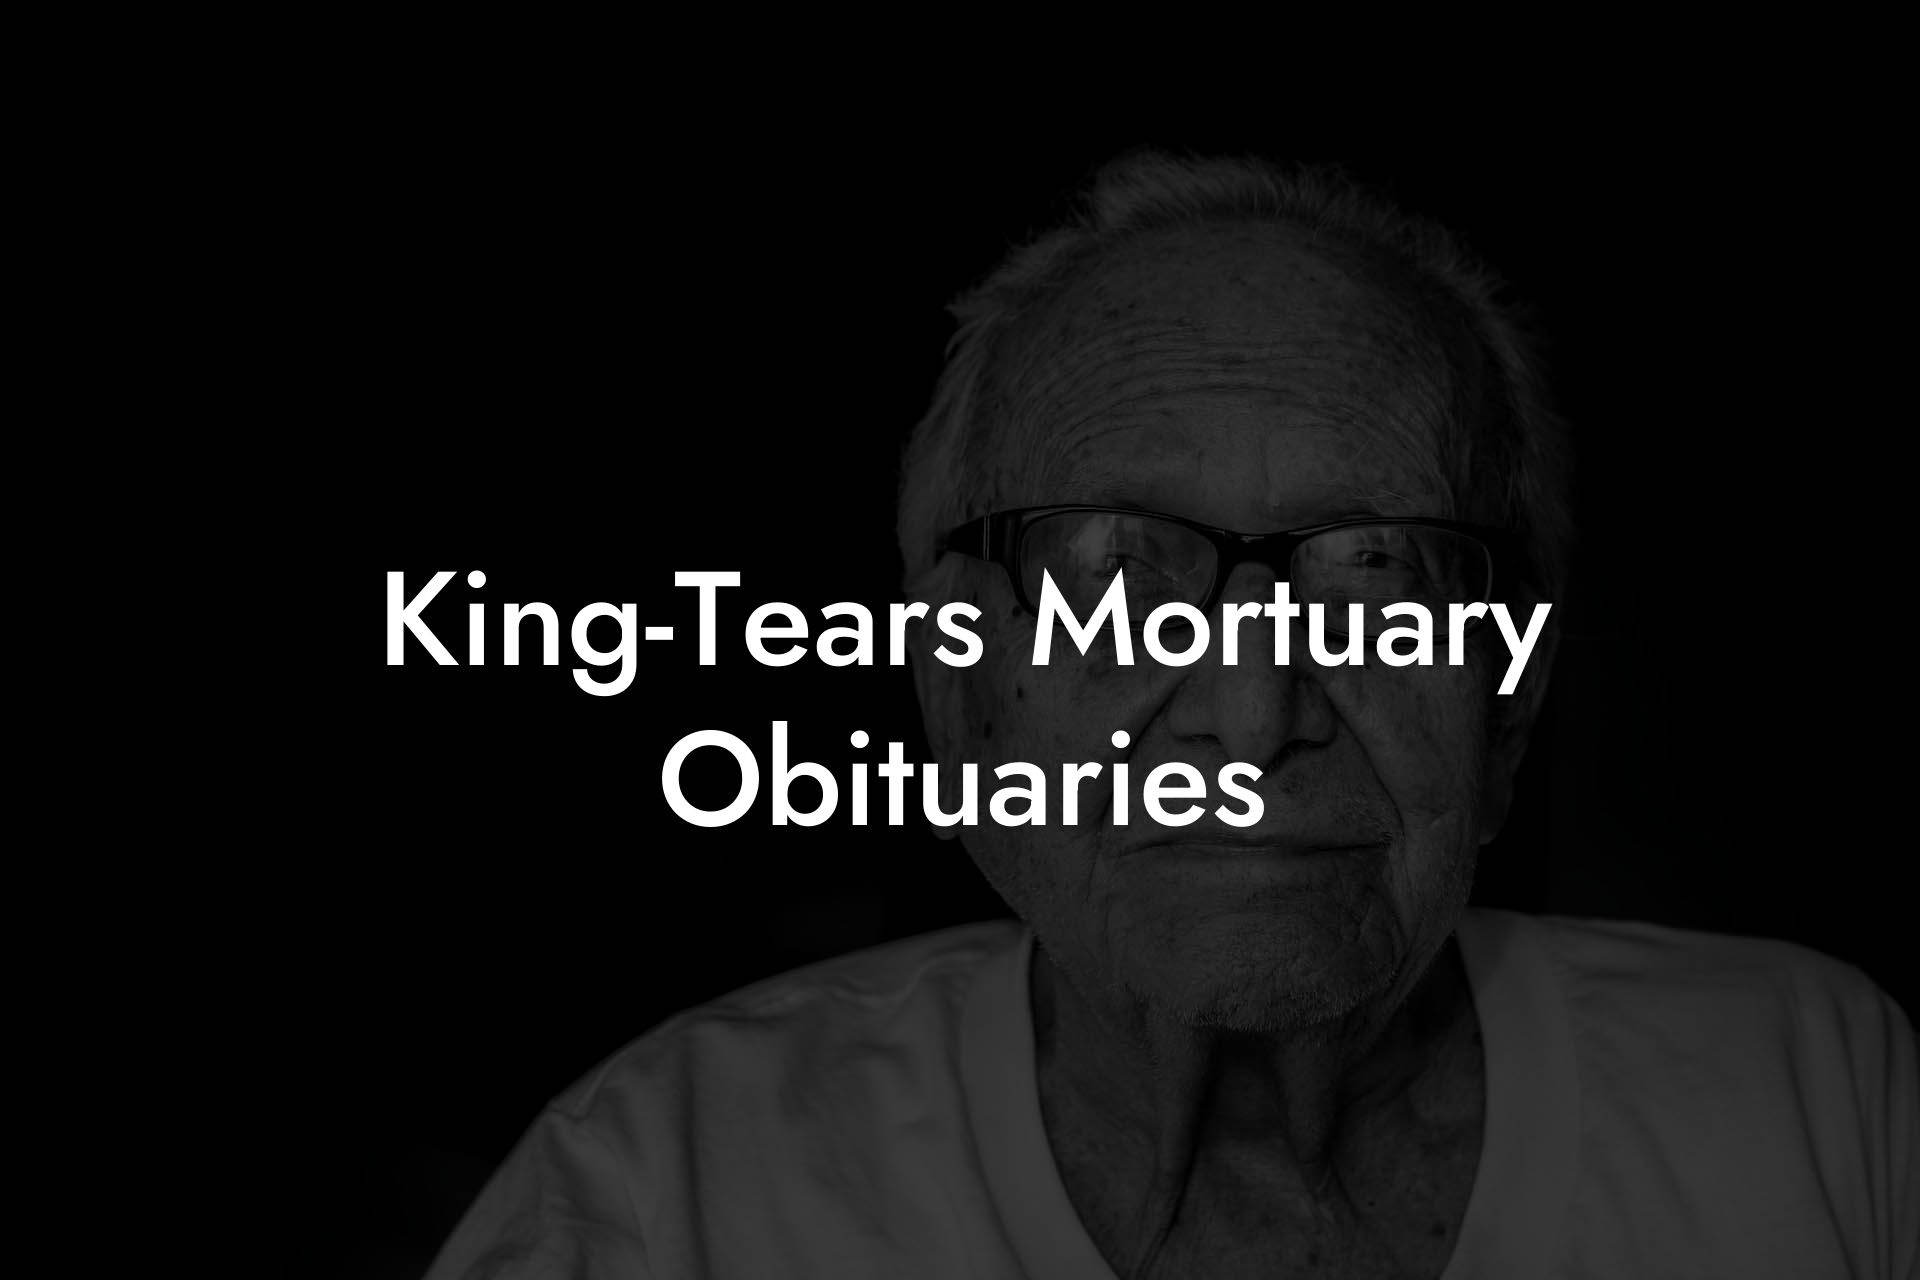 King-Tears Mortuary Obituaries